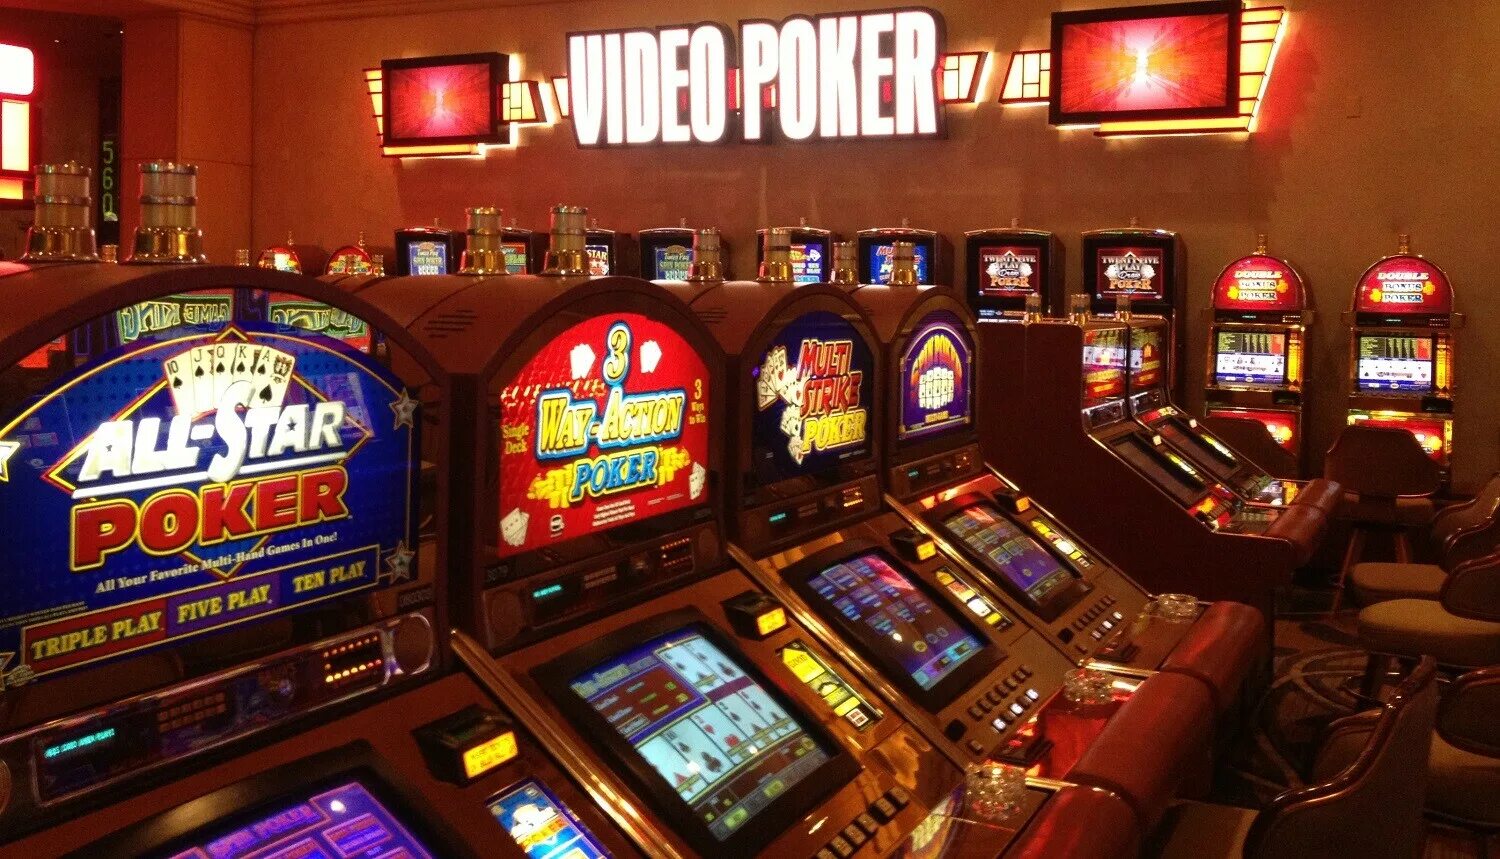 Игровой бесплатный автомат покер. Игровые автоматы казино ya888ya. Видеопокер. Казино с видеопокером. Казино на сеге.